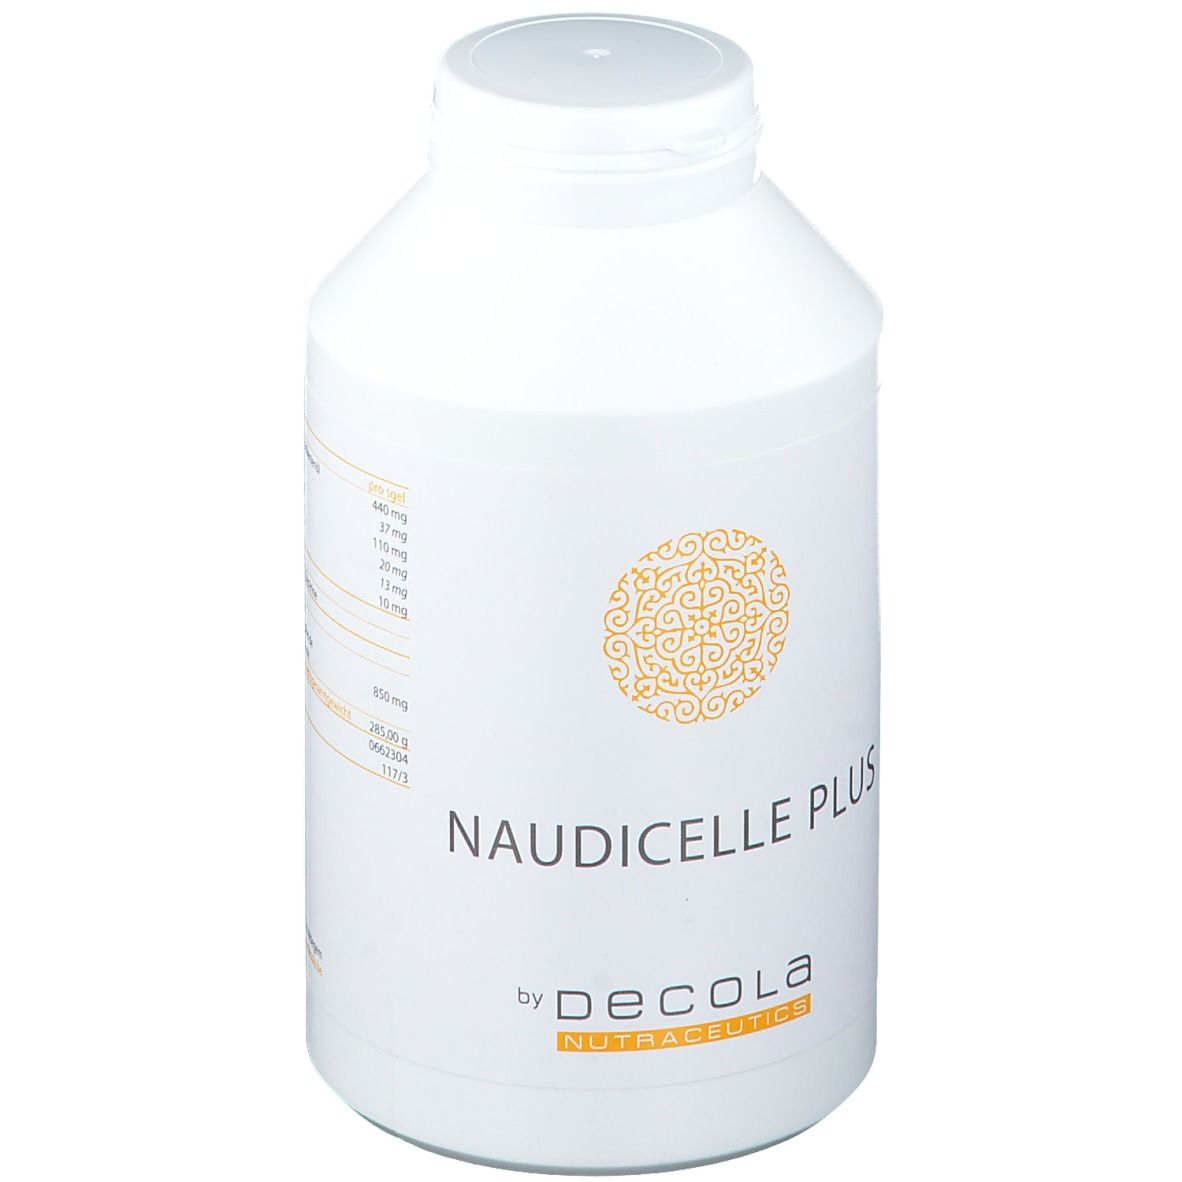 DECOLA Naudicelle Plus